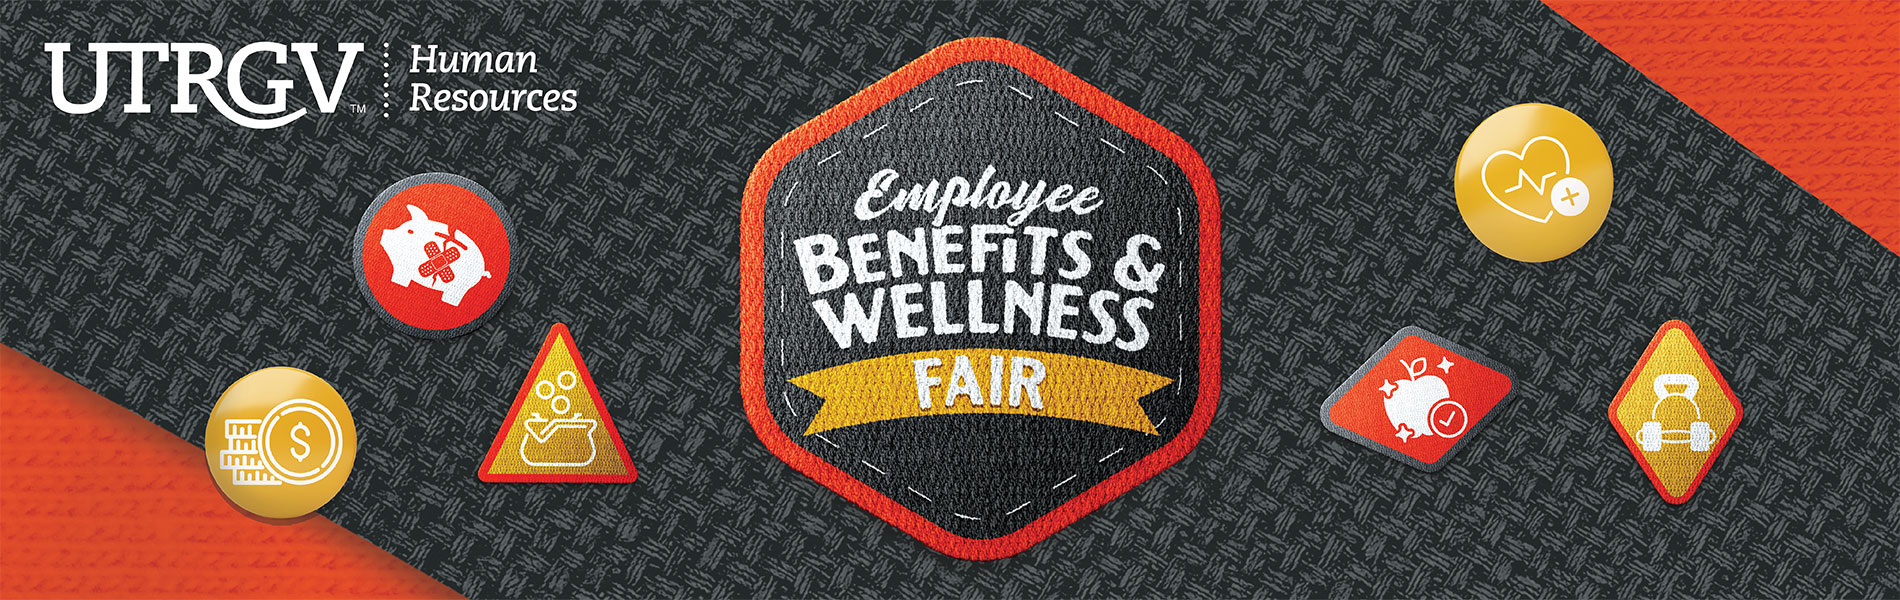 Wellness fair banner